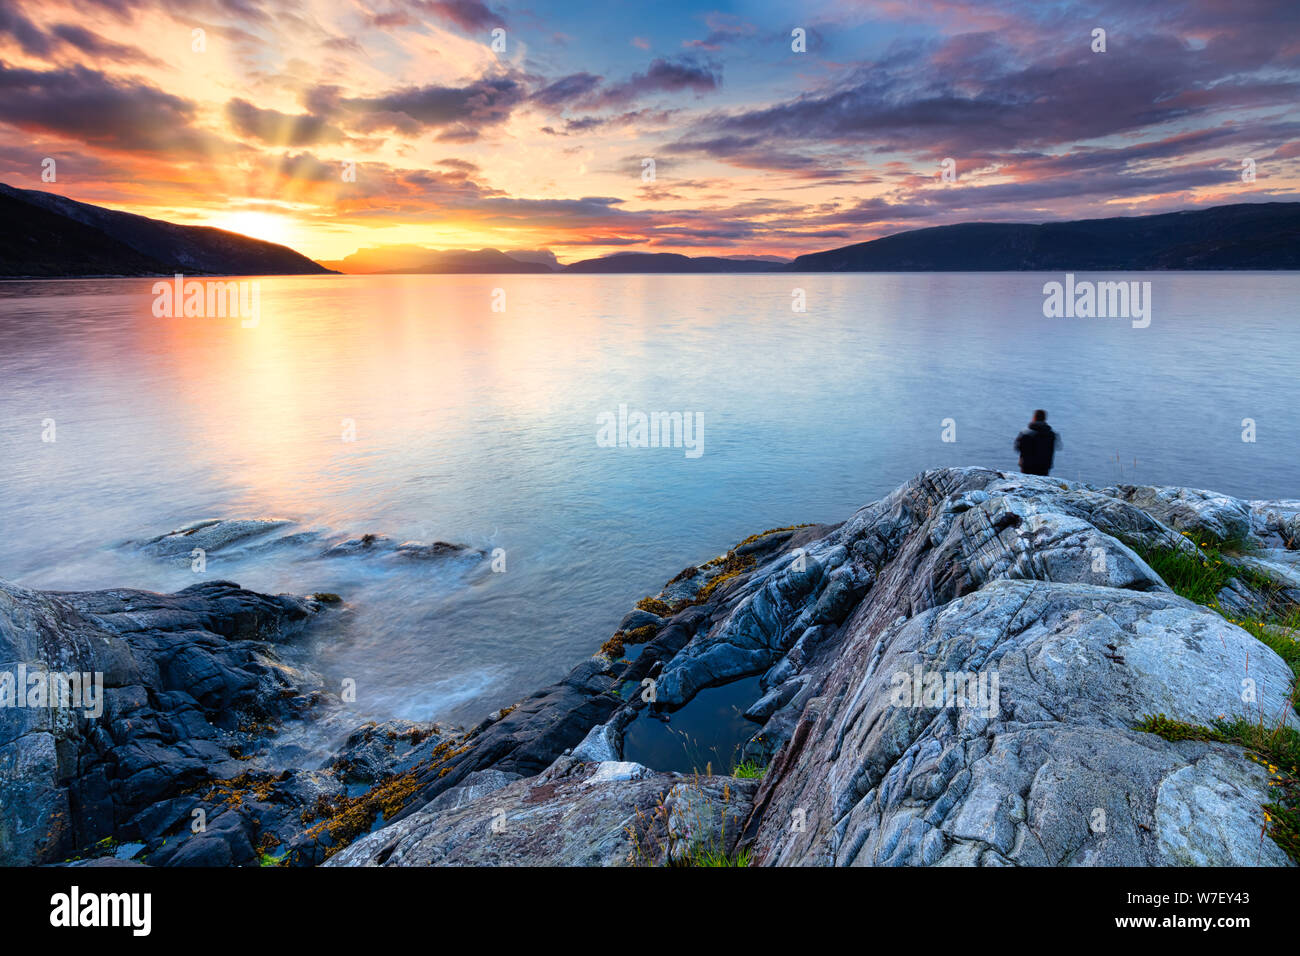 Ein angler am Sogne Fjord in Norwegen bei einem schönen Sonnenuntergang mit den Bergen im Hintergrund - Norwegisch reisen Bild Stockfoto